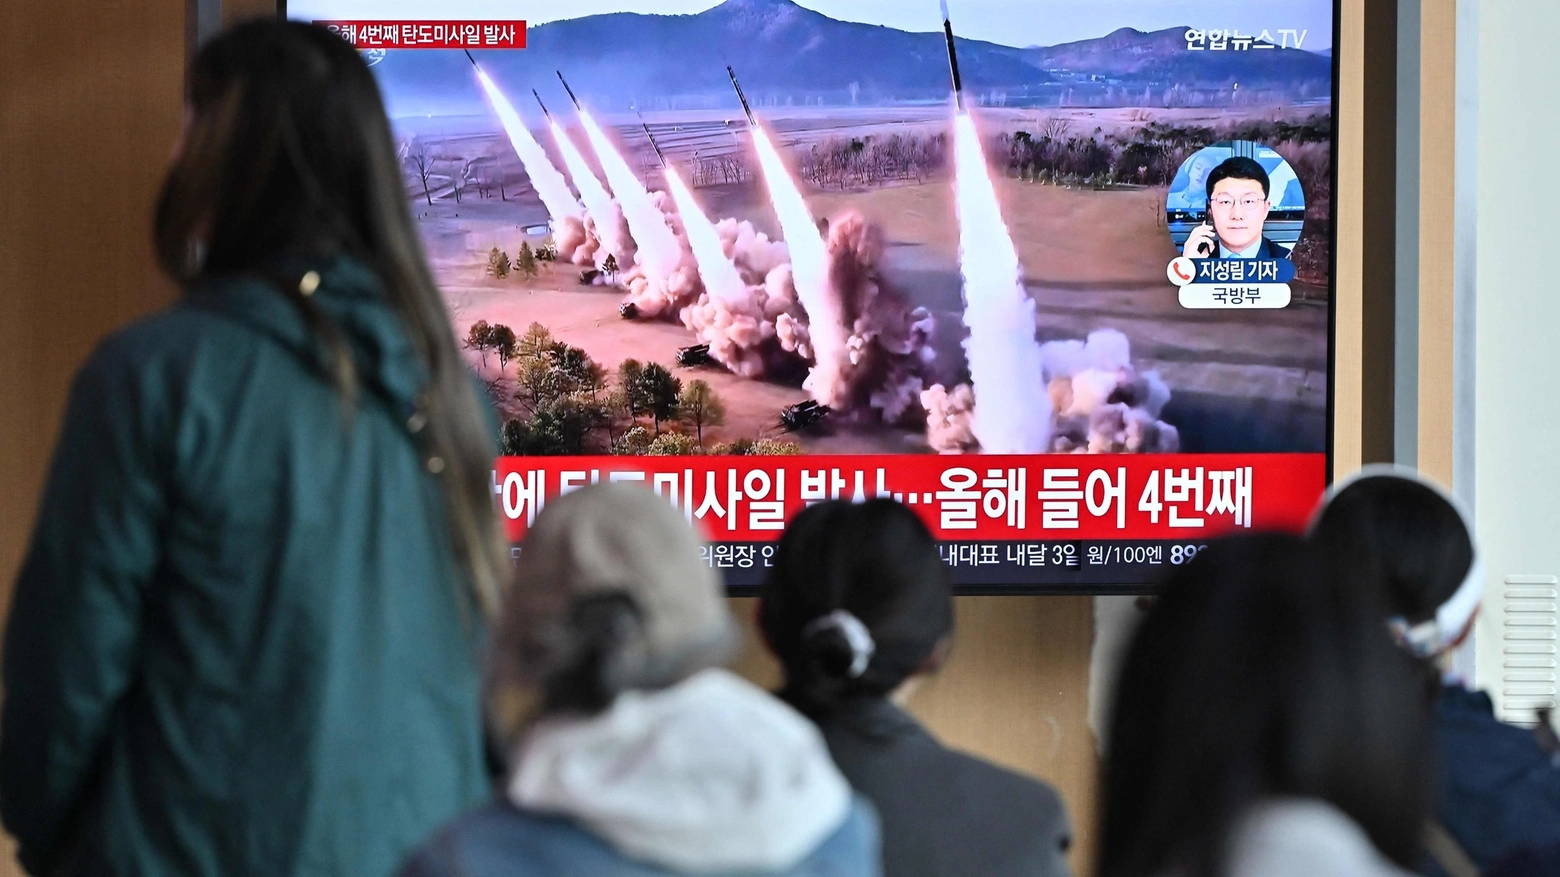 La denuncia di Tokyo e Seul. Negli ultimi mesi Pyongyang ha mantenuto un ritmo accelerato nei test sulle armi